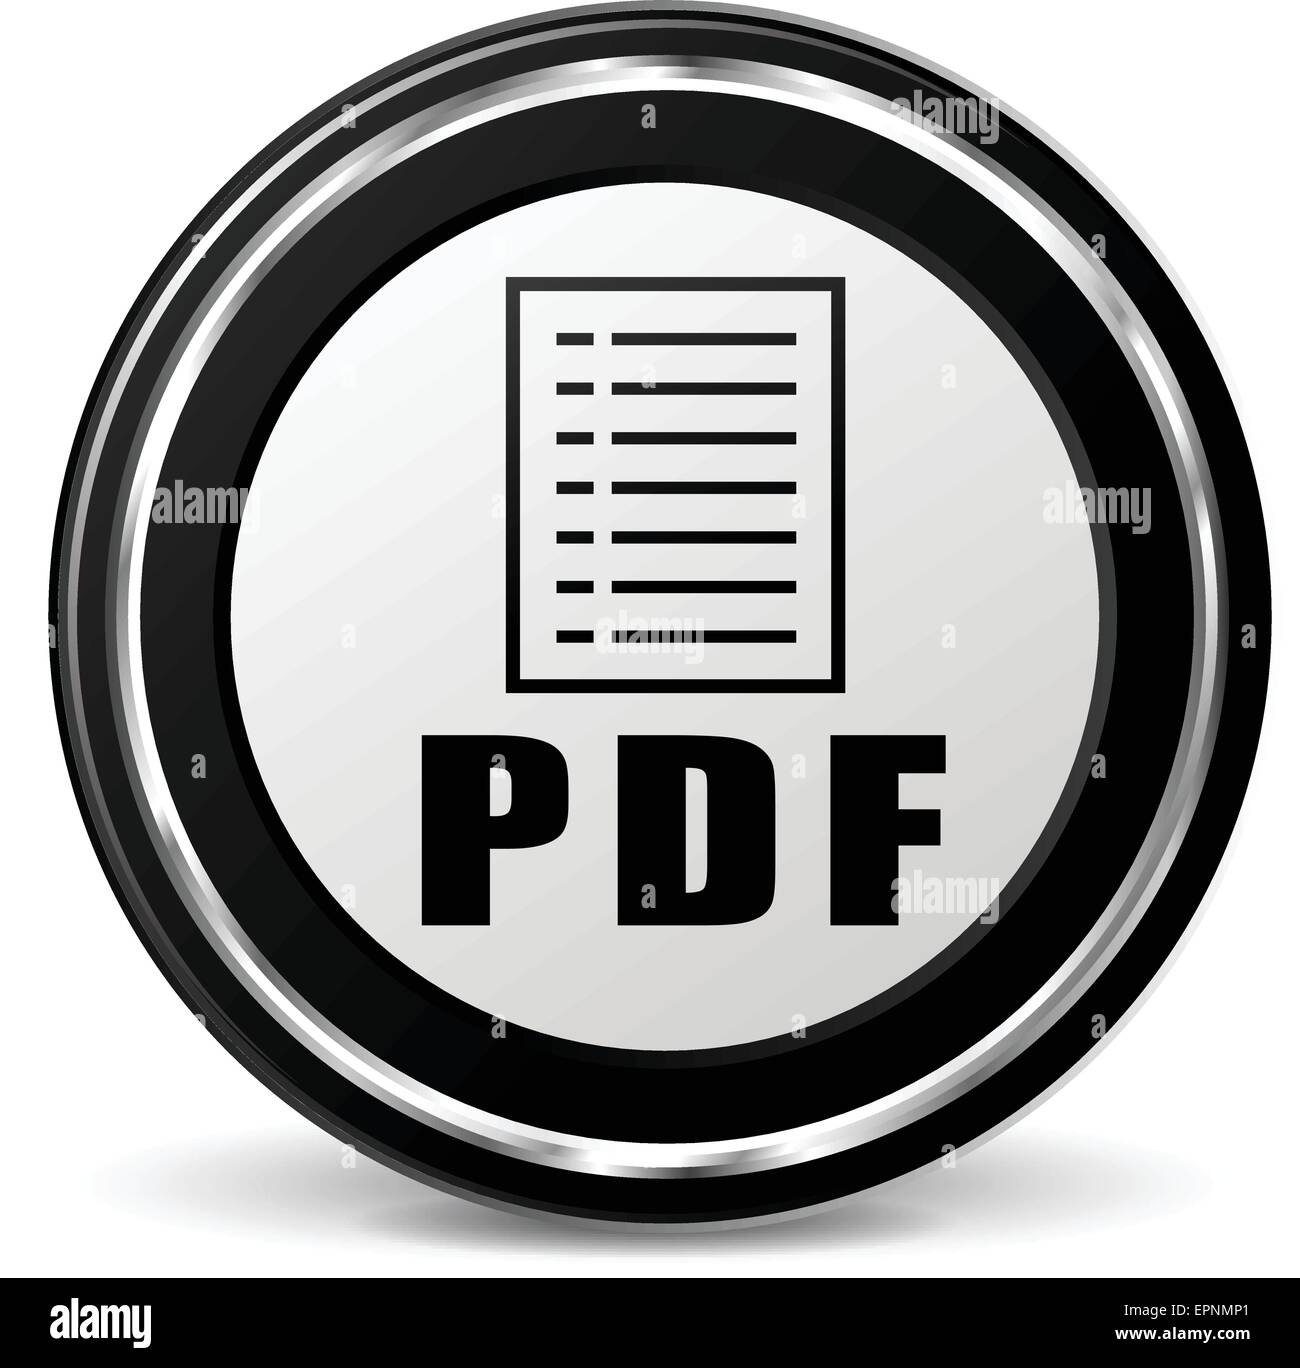 Pdf Banque de photographies et d'images à haute résolution - Alamy